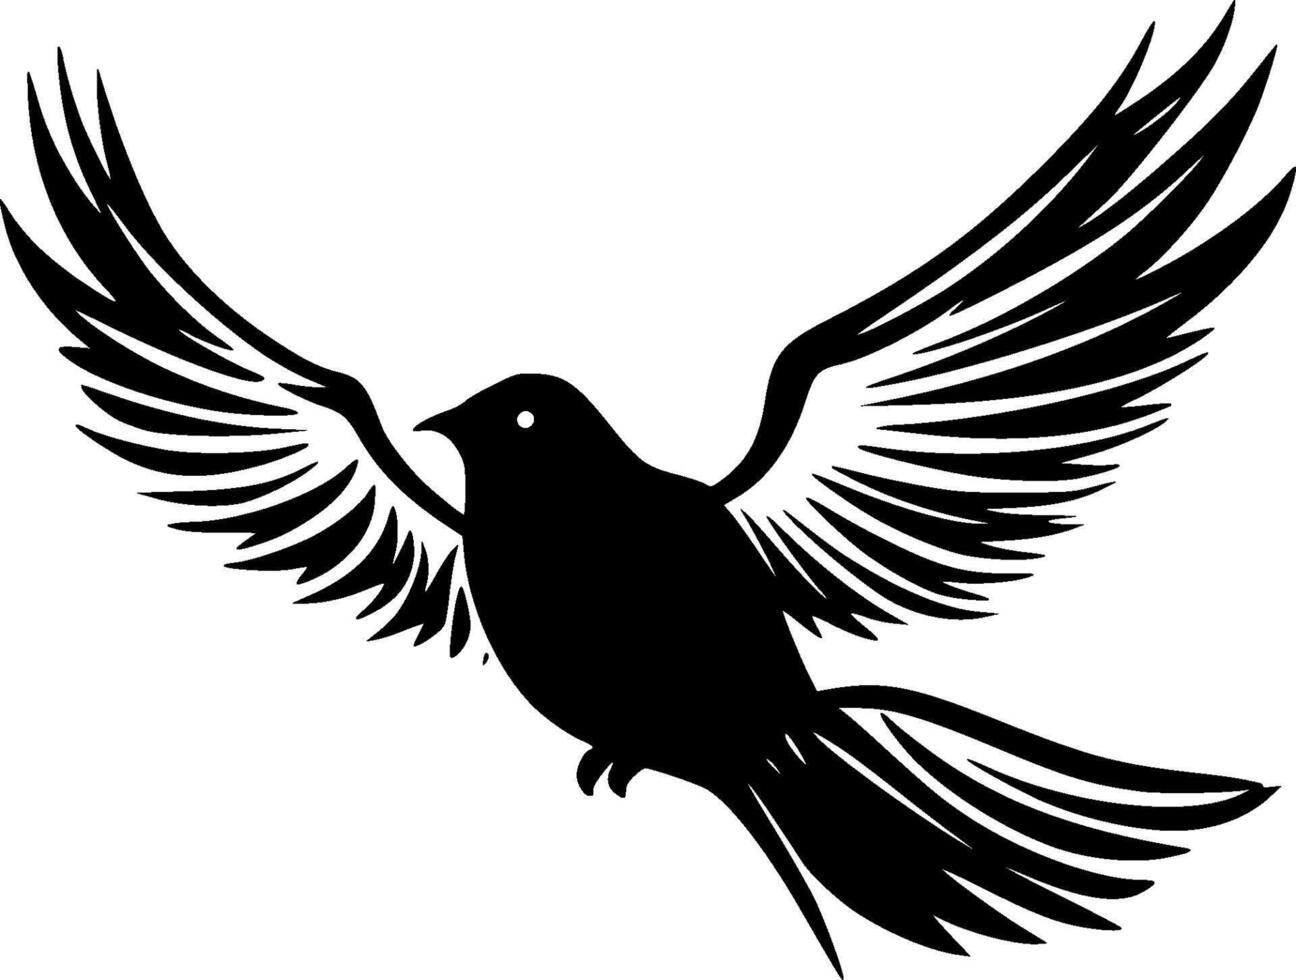 Vogel - - minimalistisch und eben Logo - - Vektor Illustration